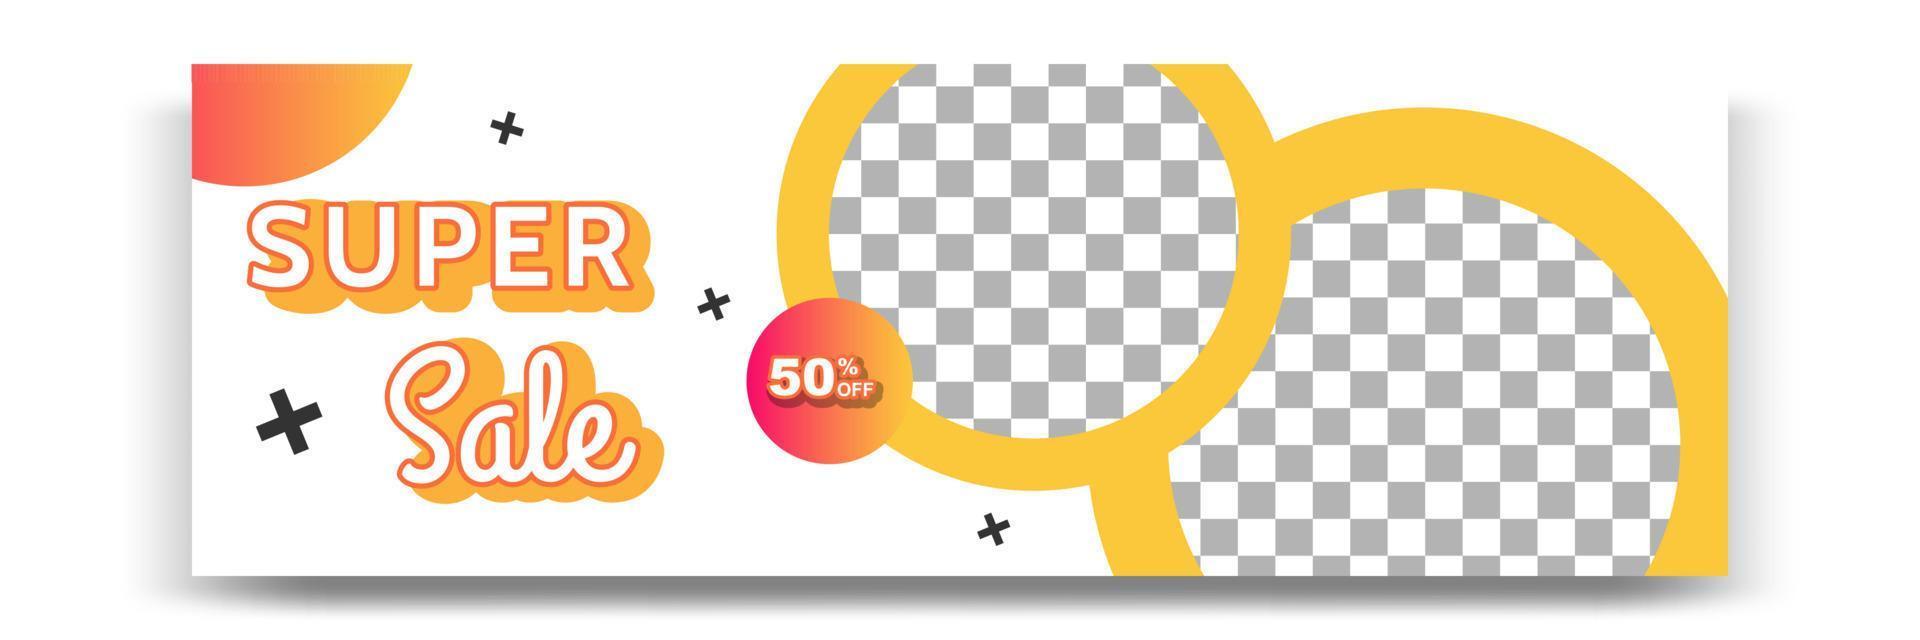 conception de modèle de bannière géométrique moderne dégradé abstrait en jaune, orange, blanc. adapté à la publicité et à la promotion dans les publications sur les réseaux sociaux, blog, web, couverture, en-tête. vecteur